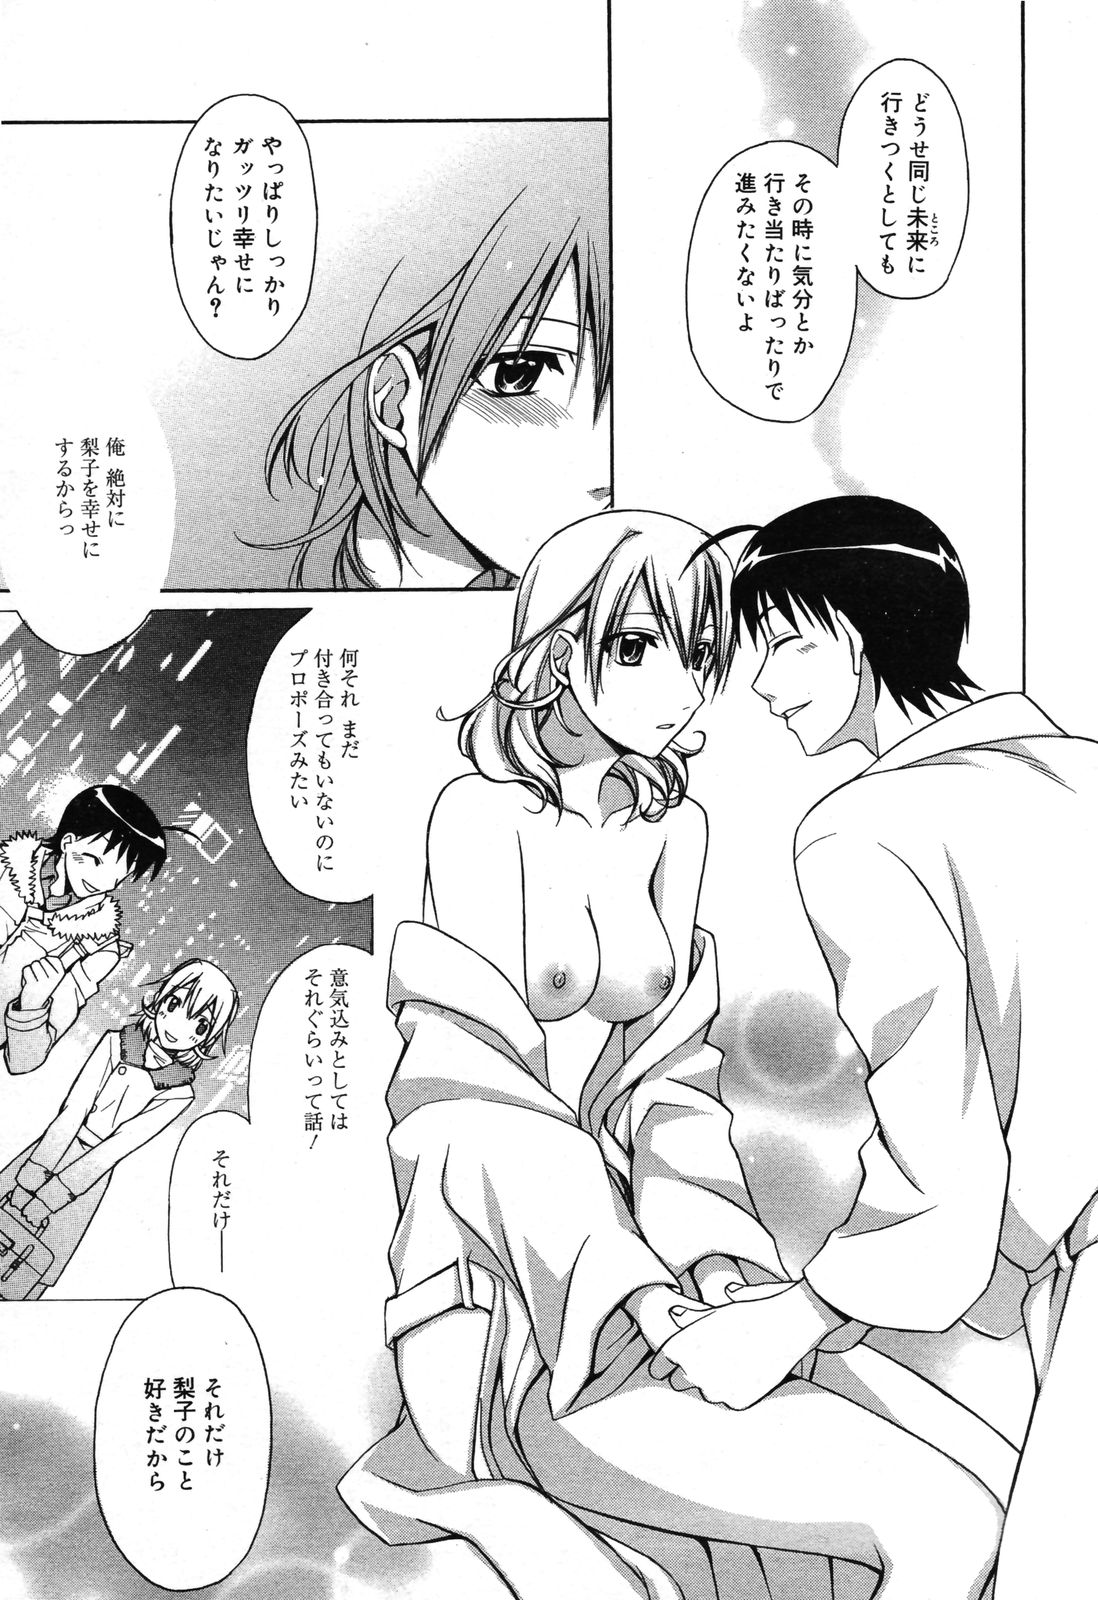 Manga Bangaichi 2007-05 page 28 full